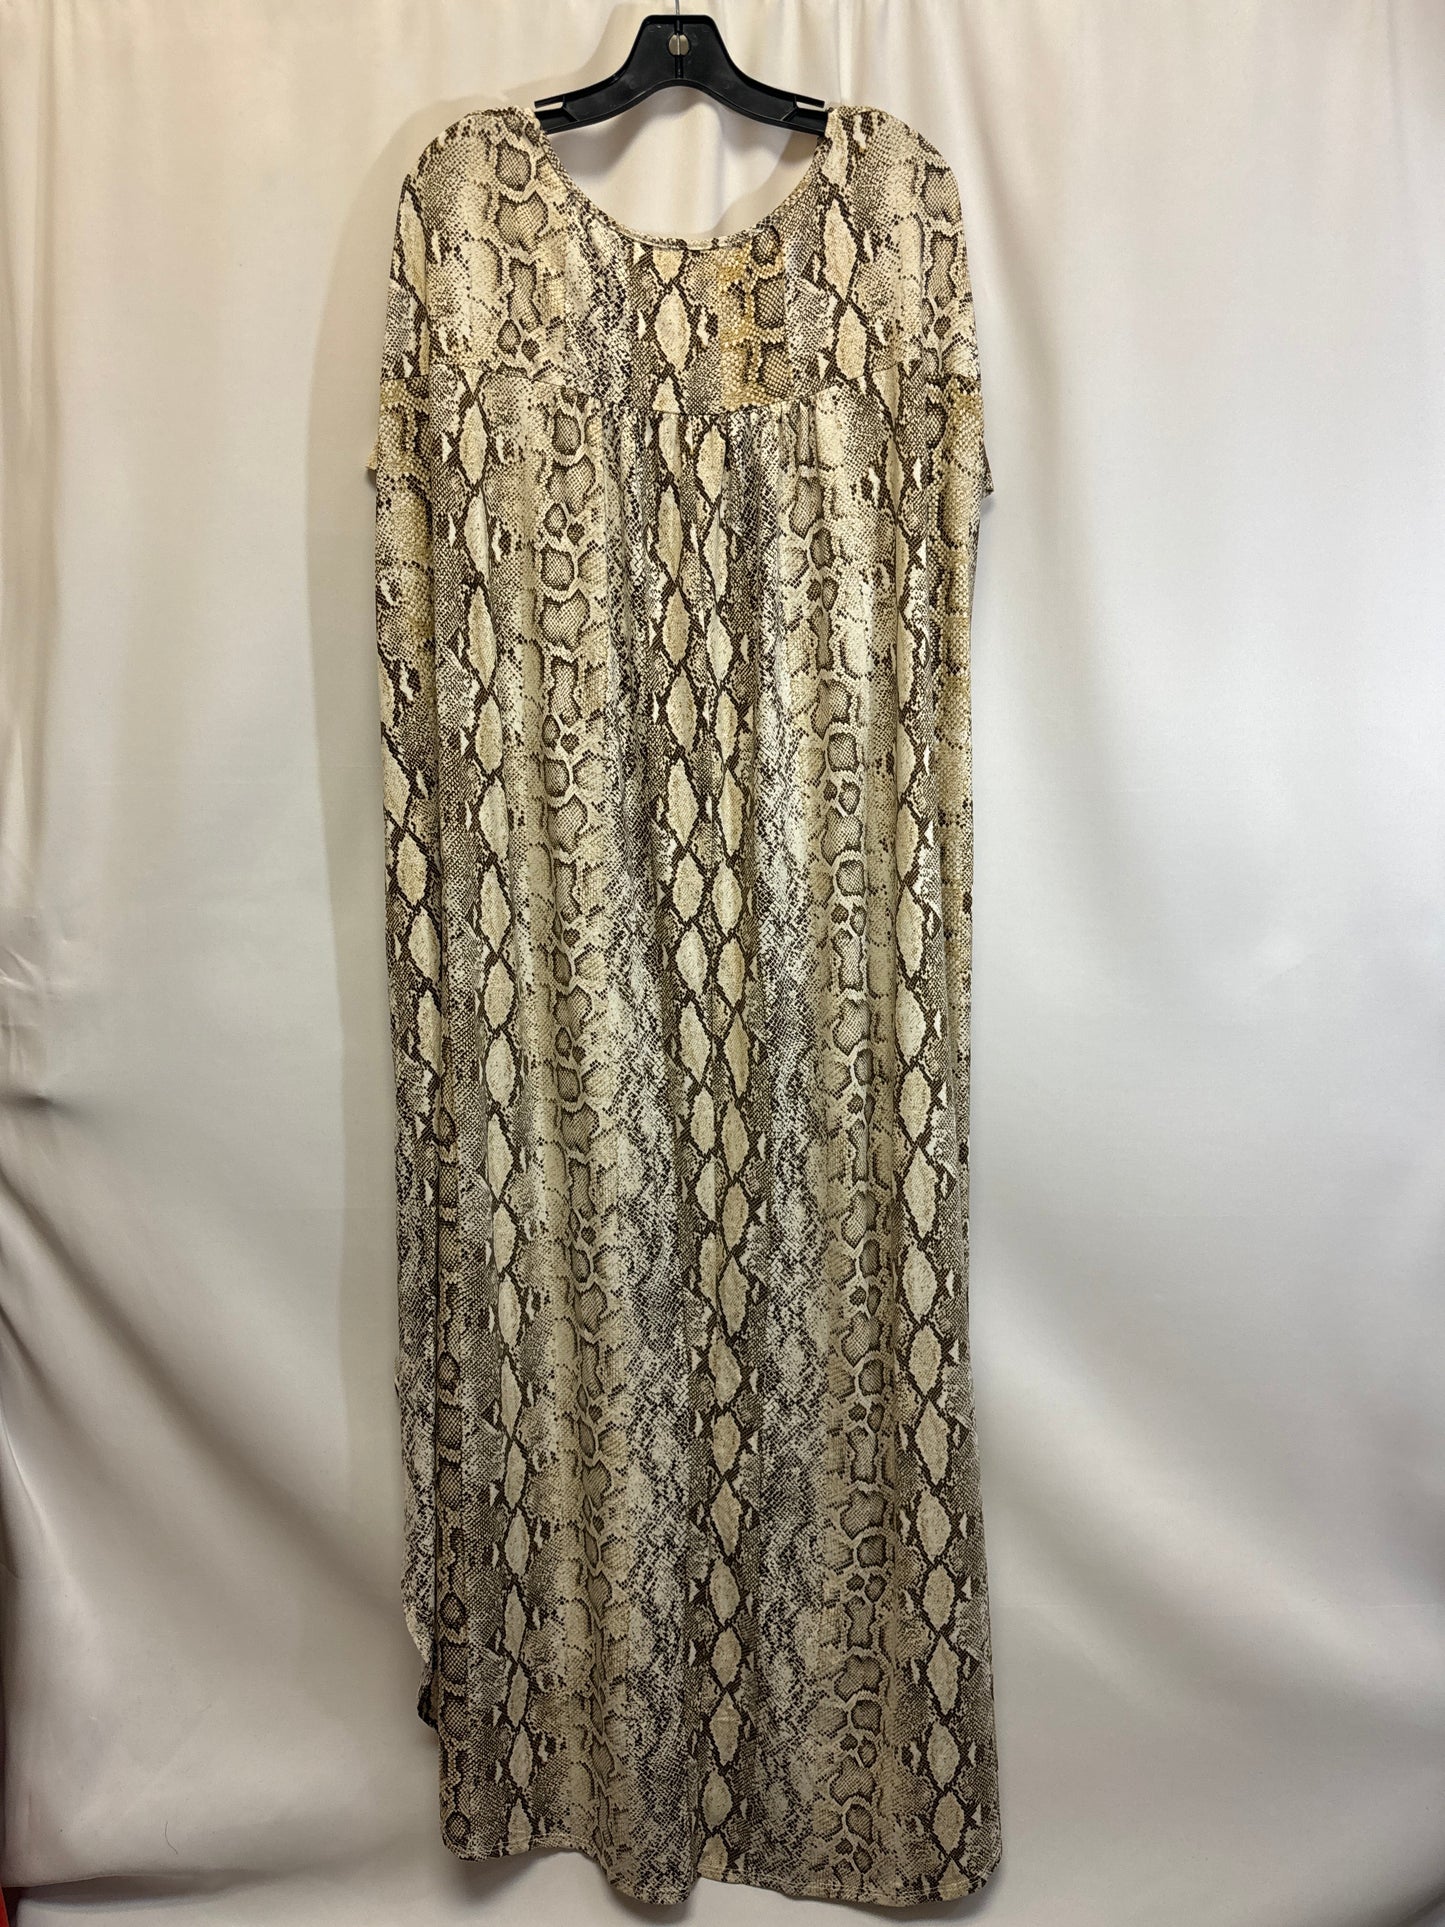 Snakeskin Print Dress Casual Maxi Entro, Size 2x